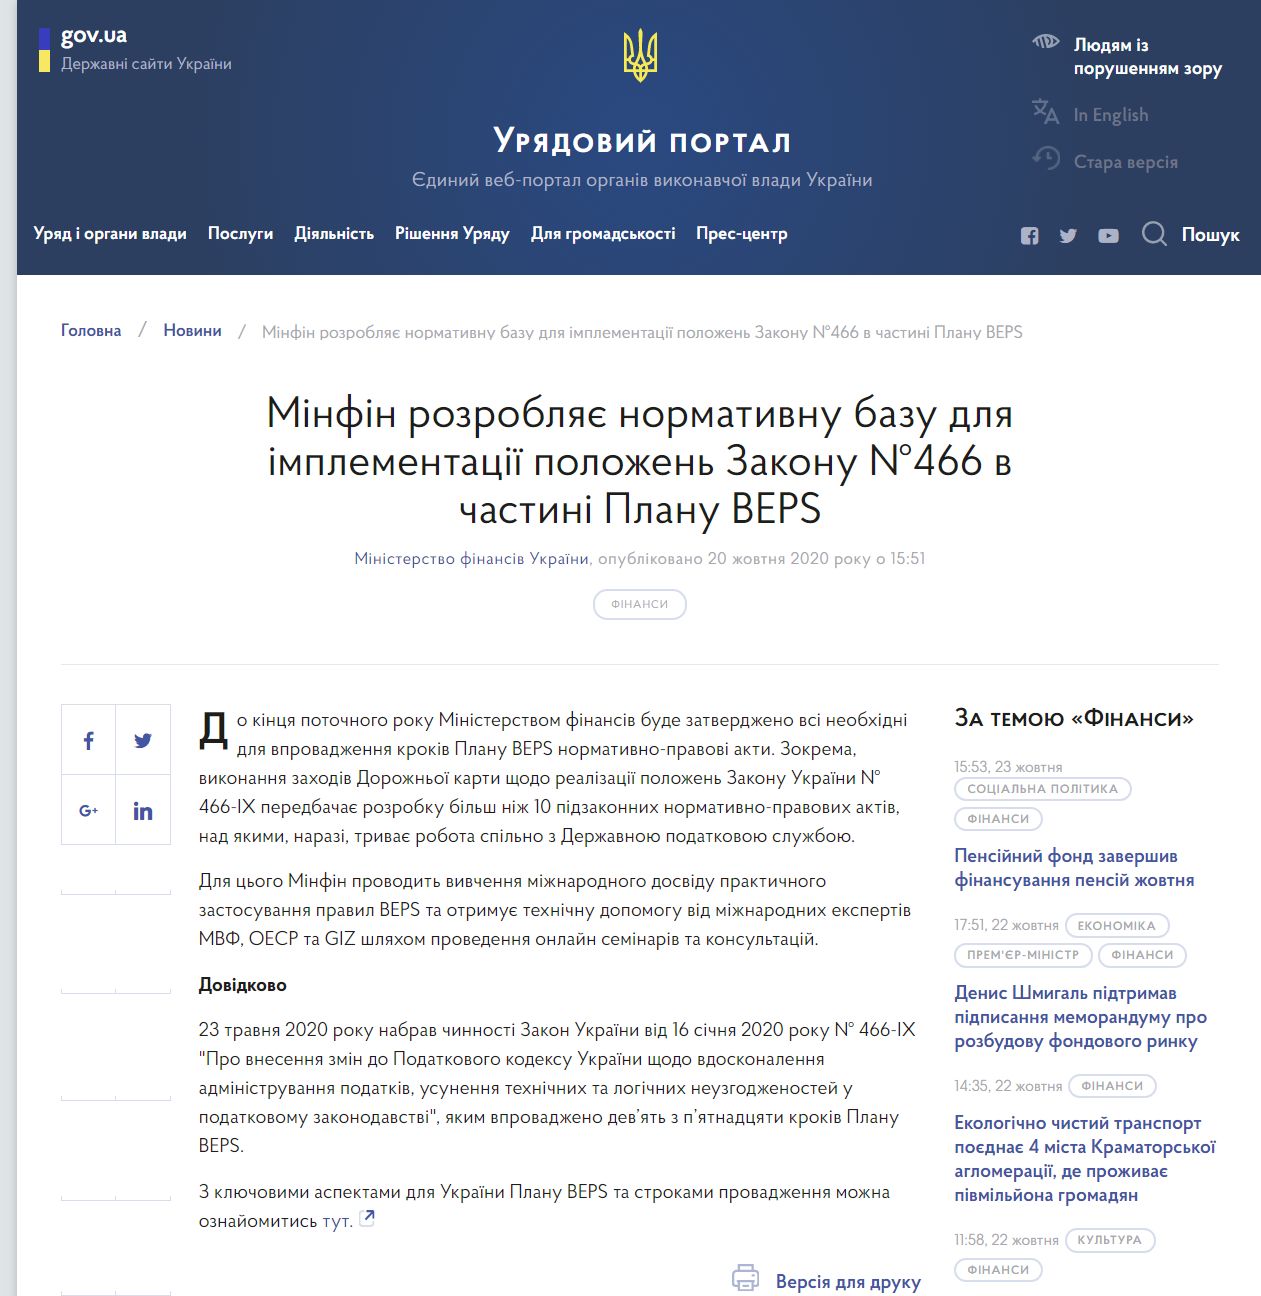 https://www.kmu.gov.ua/news/minfin-rozroblyaye-normativnu-bazu-dlya-implementaciyi-polozhen-zakonu-466-v-chastini-planu-beps